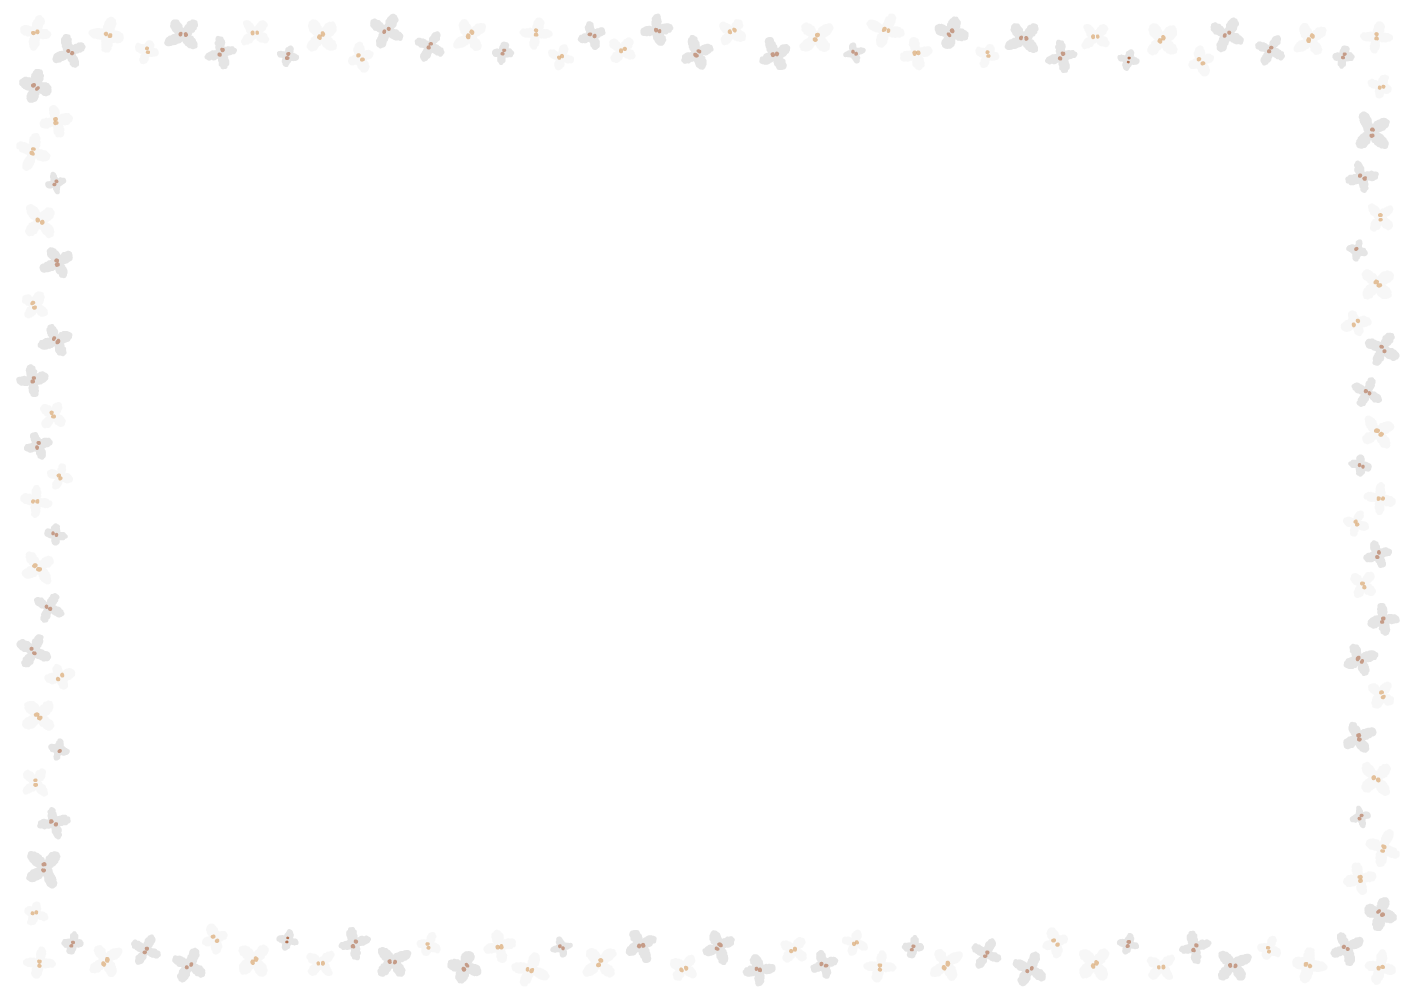 ギンモクセイのフレーム素材のフリーイラスト Clip art of ginmokusei paper frame